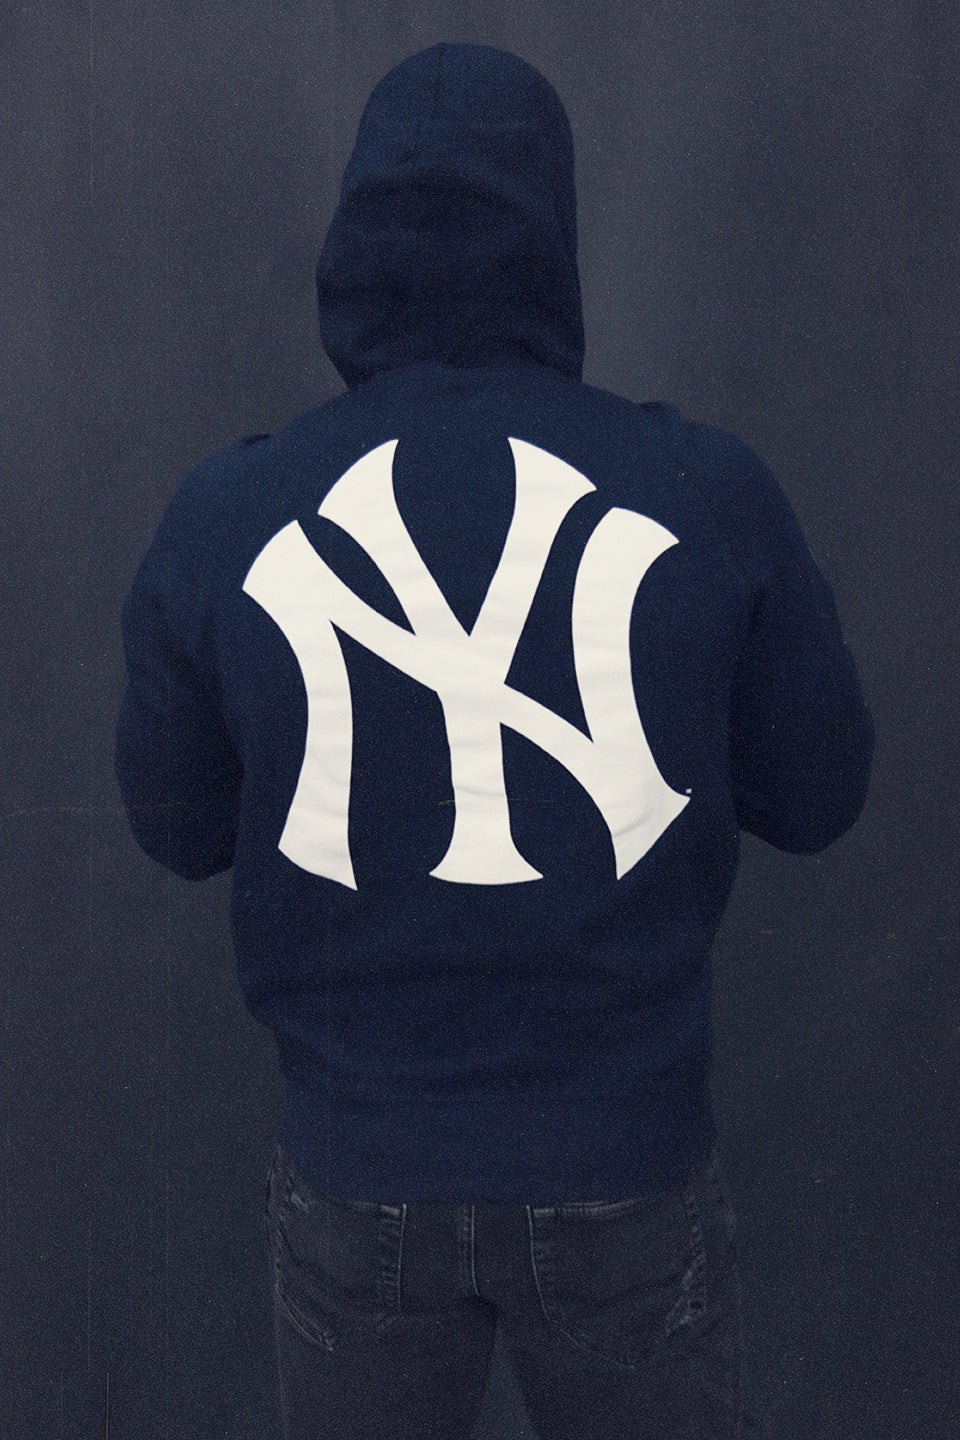 New York Yankees Derek Jeter RE2PECT 5 World Series Champ Rings Navy Blue Hoodie